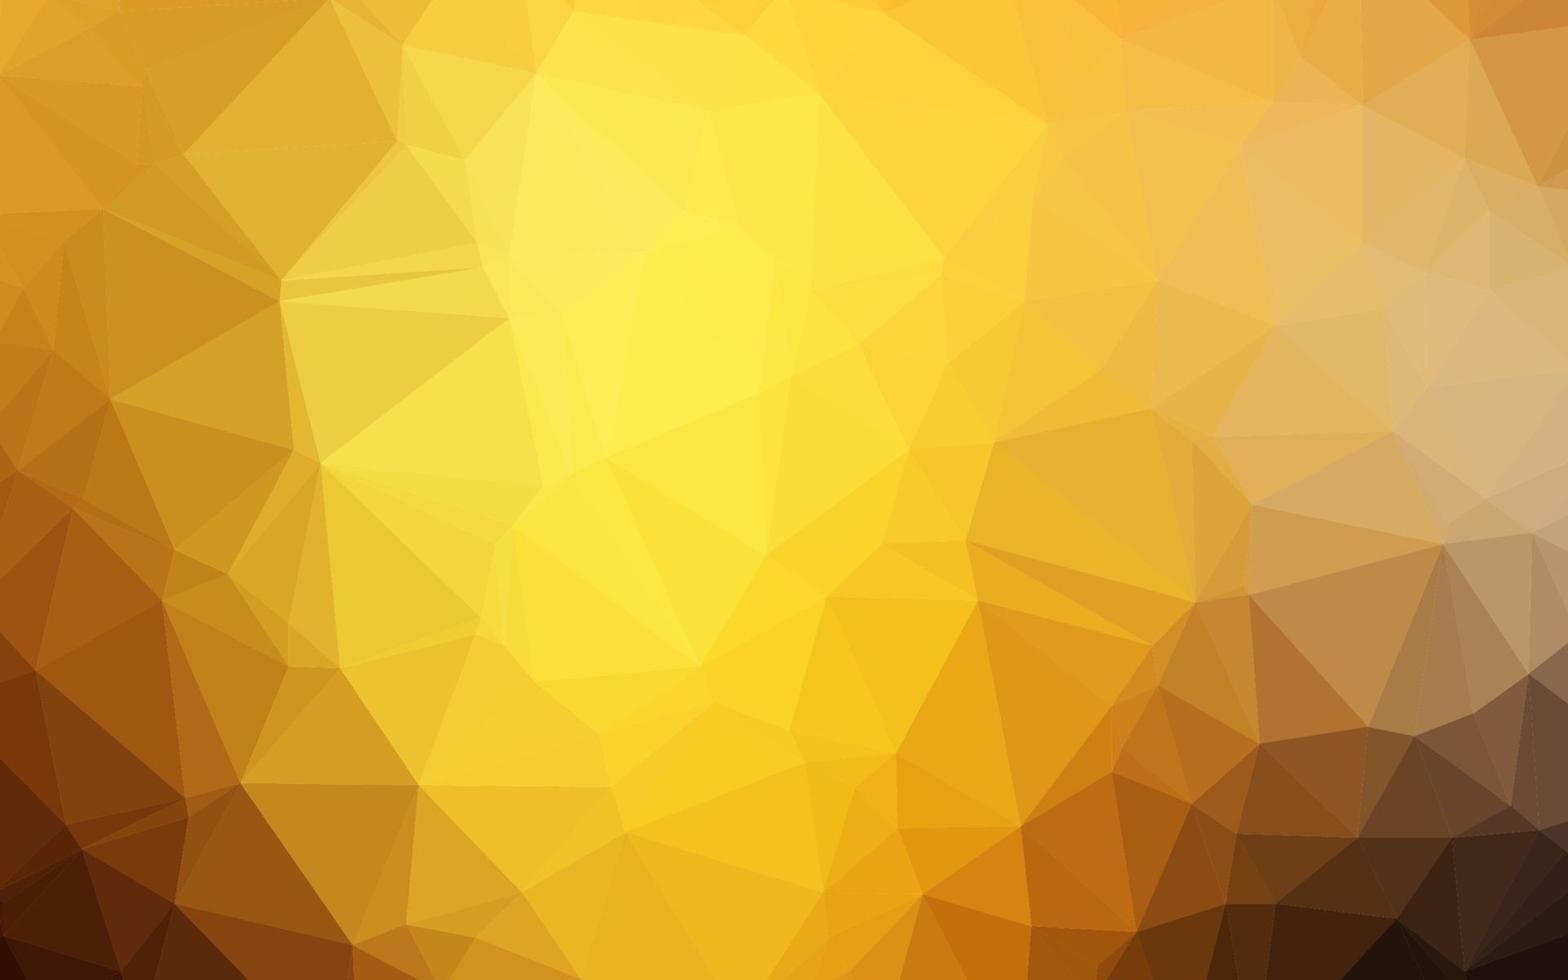 padrão de triângulo embaçado de vetor amarelo, laranja escuro.